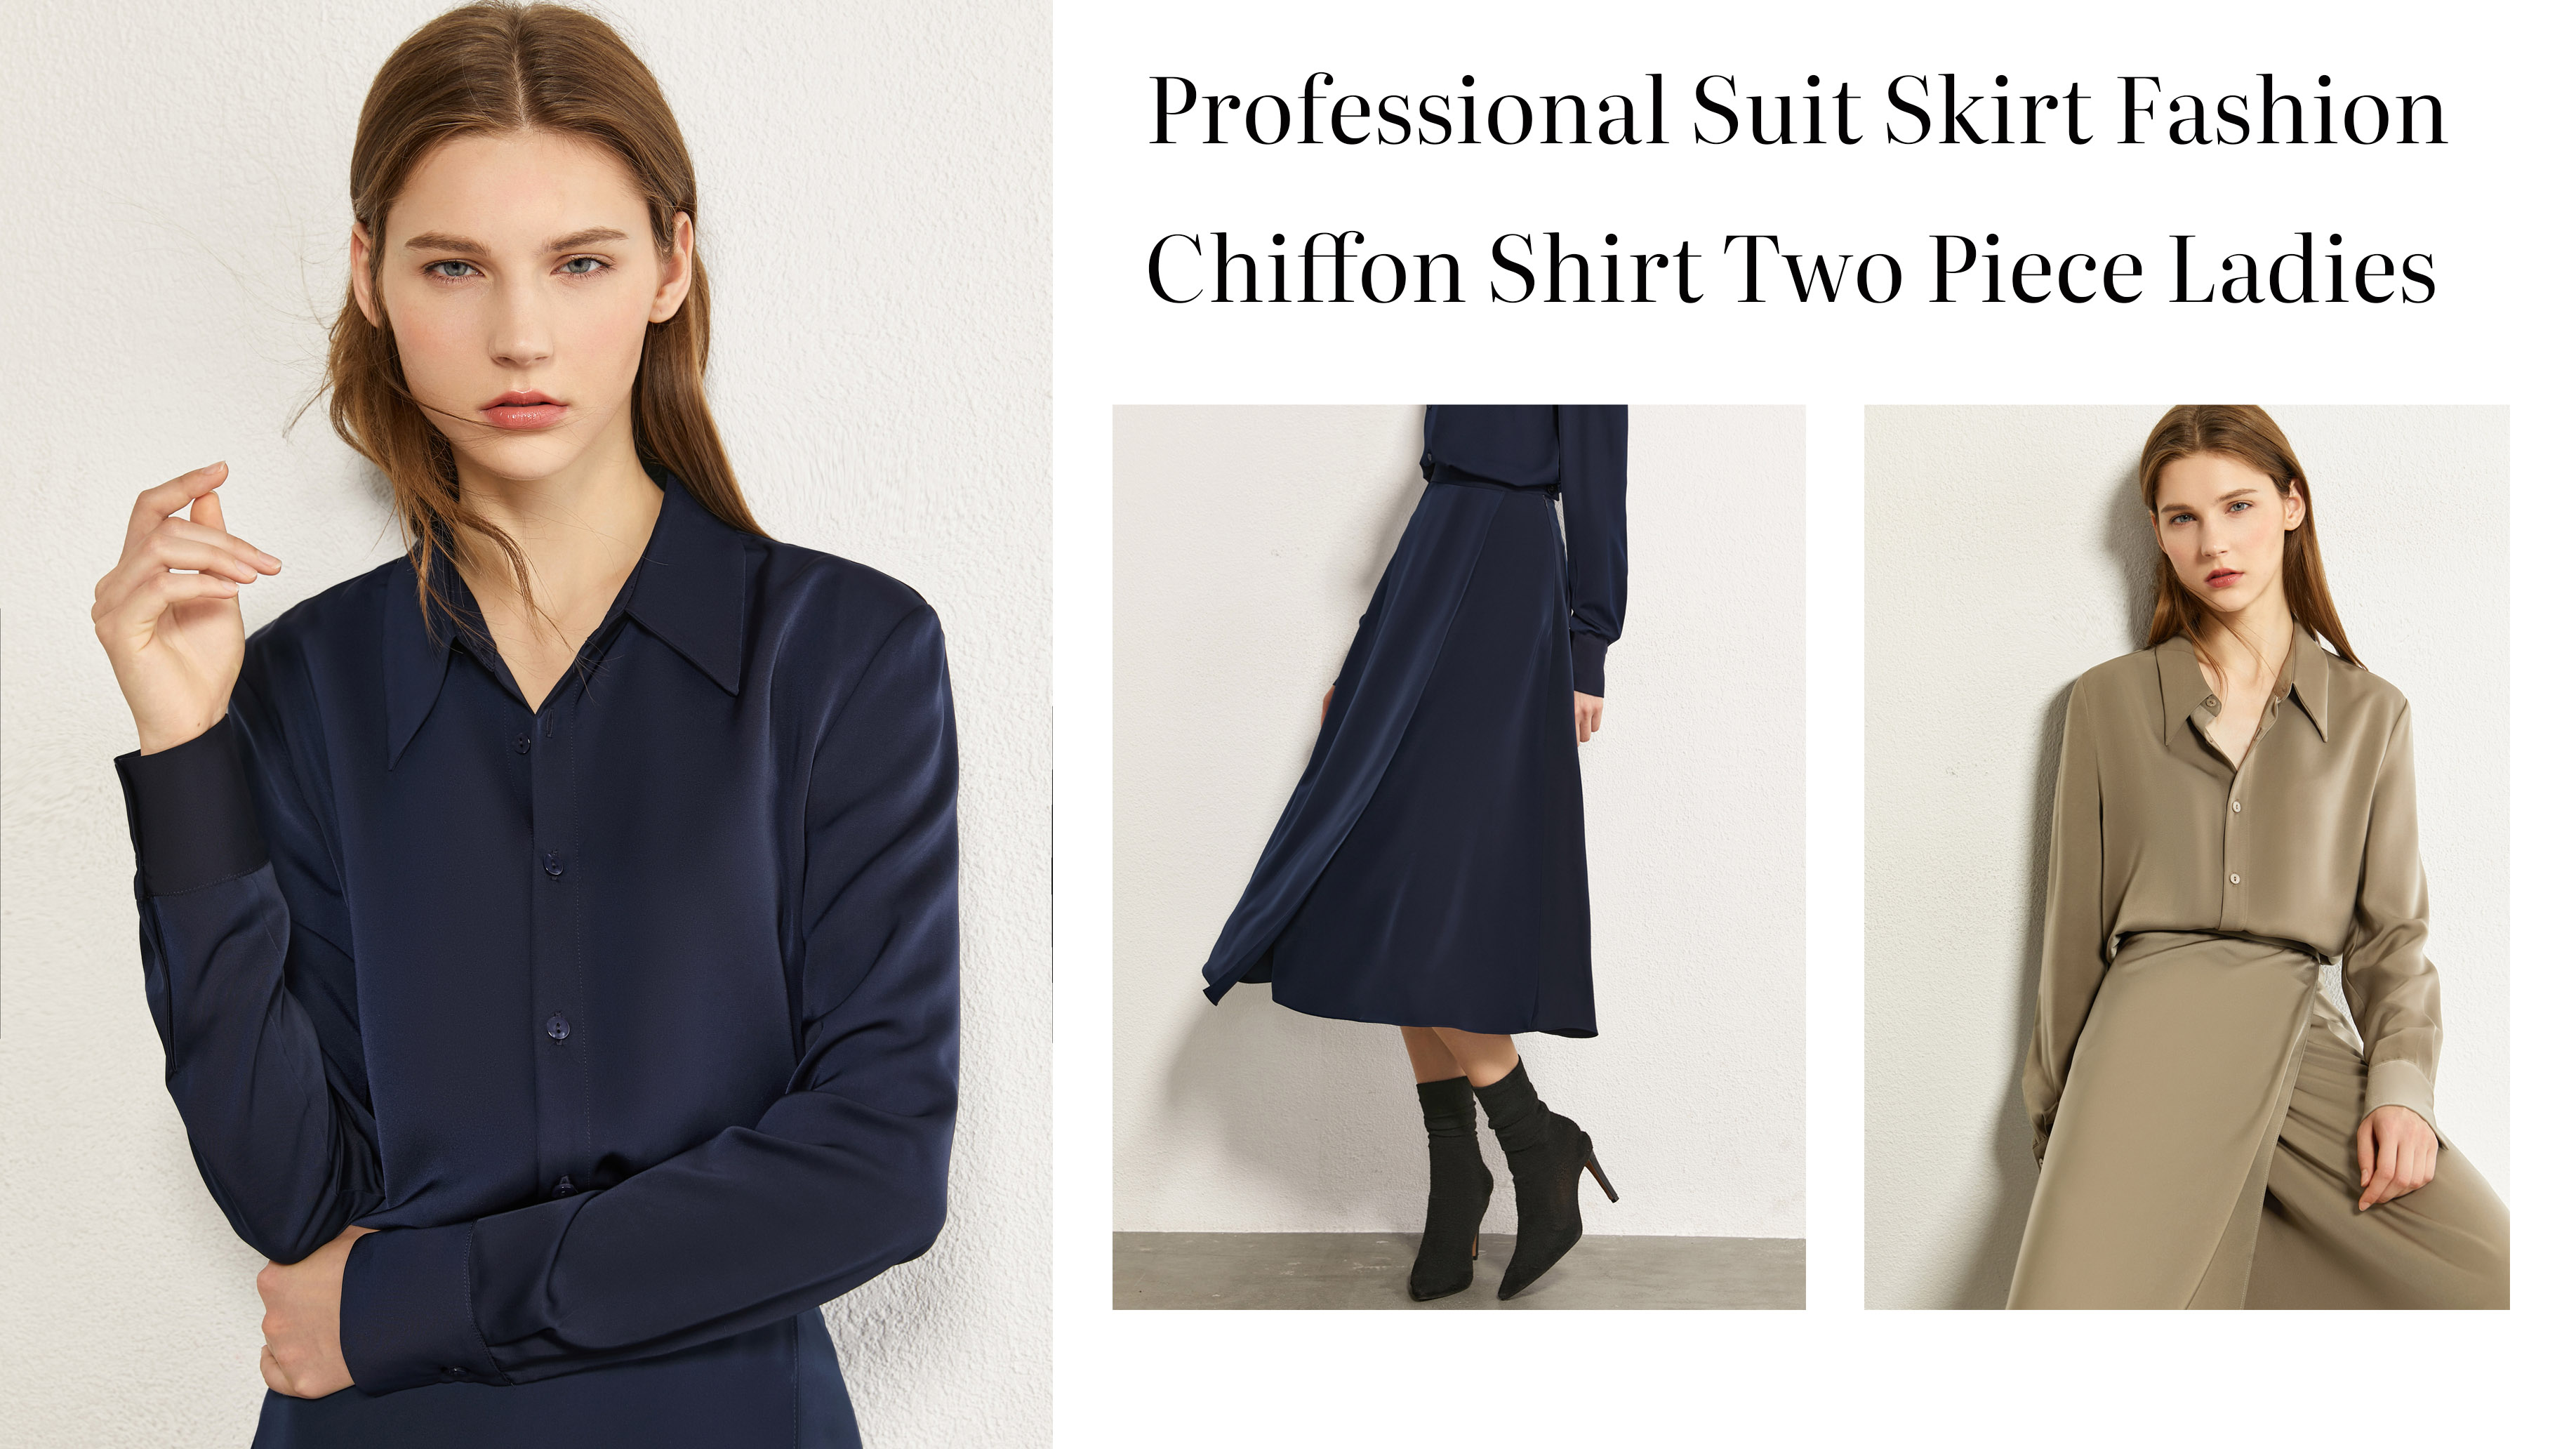 बेस्ट प्रोफेशनल सूट स्कर्ट फेसन वर्क वेयर शिफन शर्ट दुई टुक्रा महिला कम्पनी - Auschallink